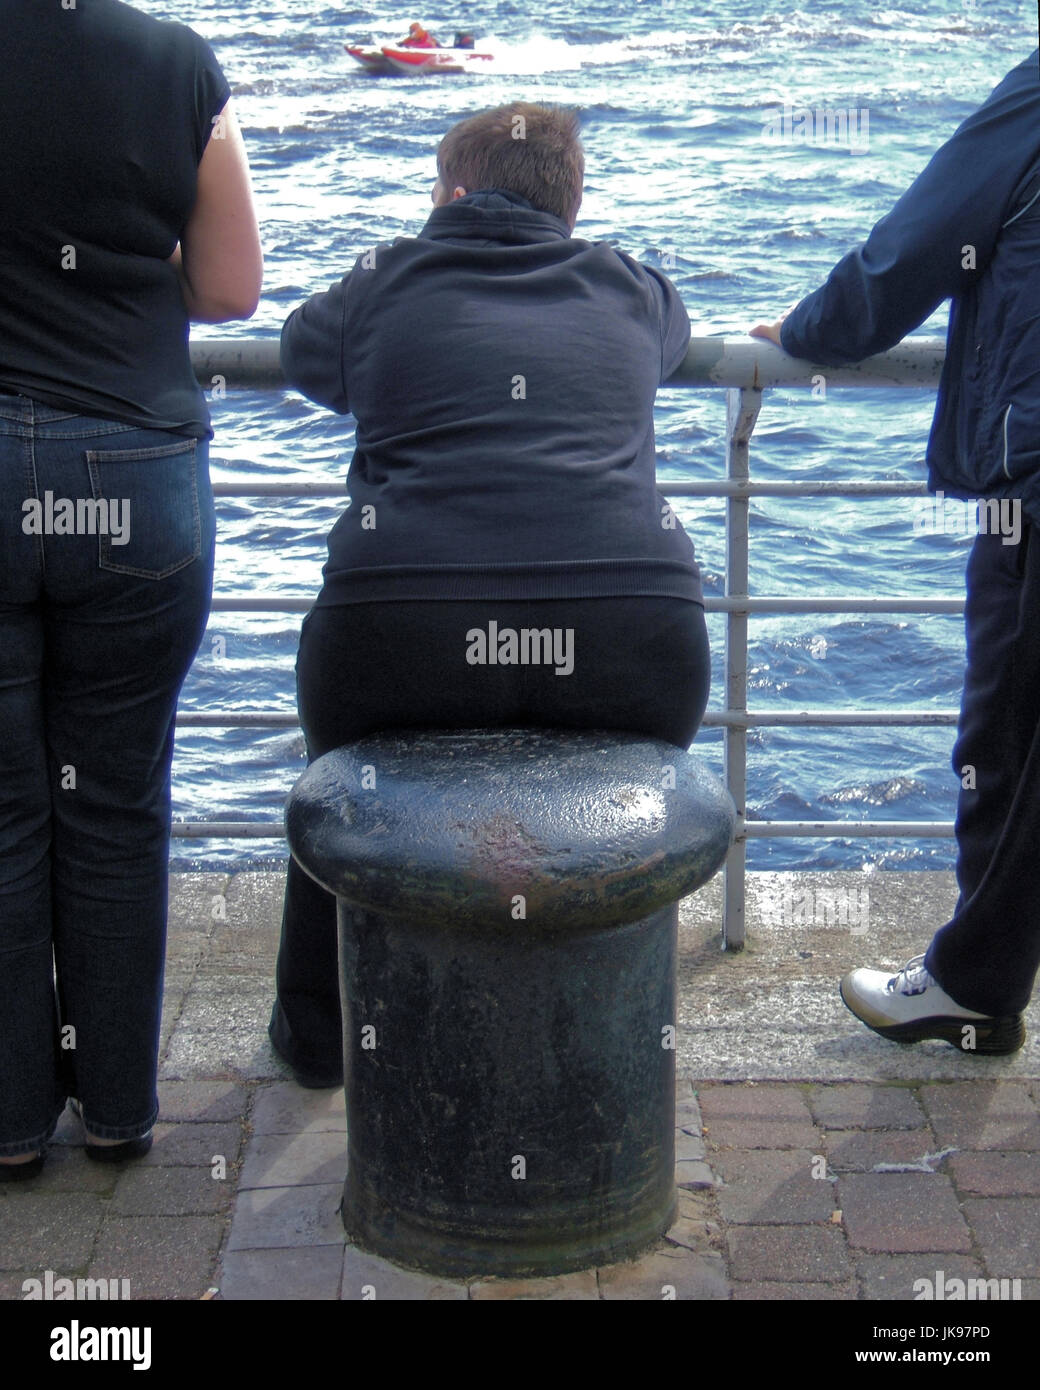 Obesi o in sovrappeso fat famiglia con bambino maschio sul sedile bollard Foto Stock